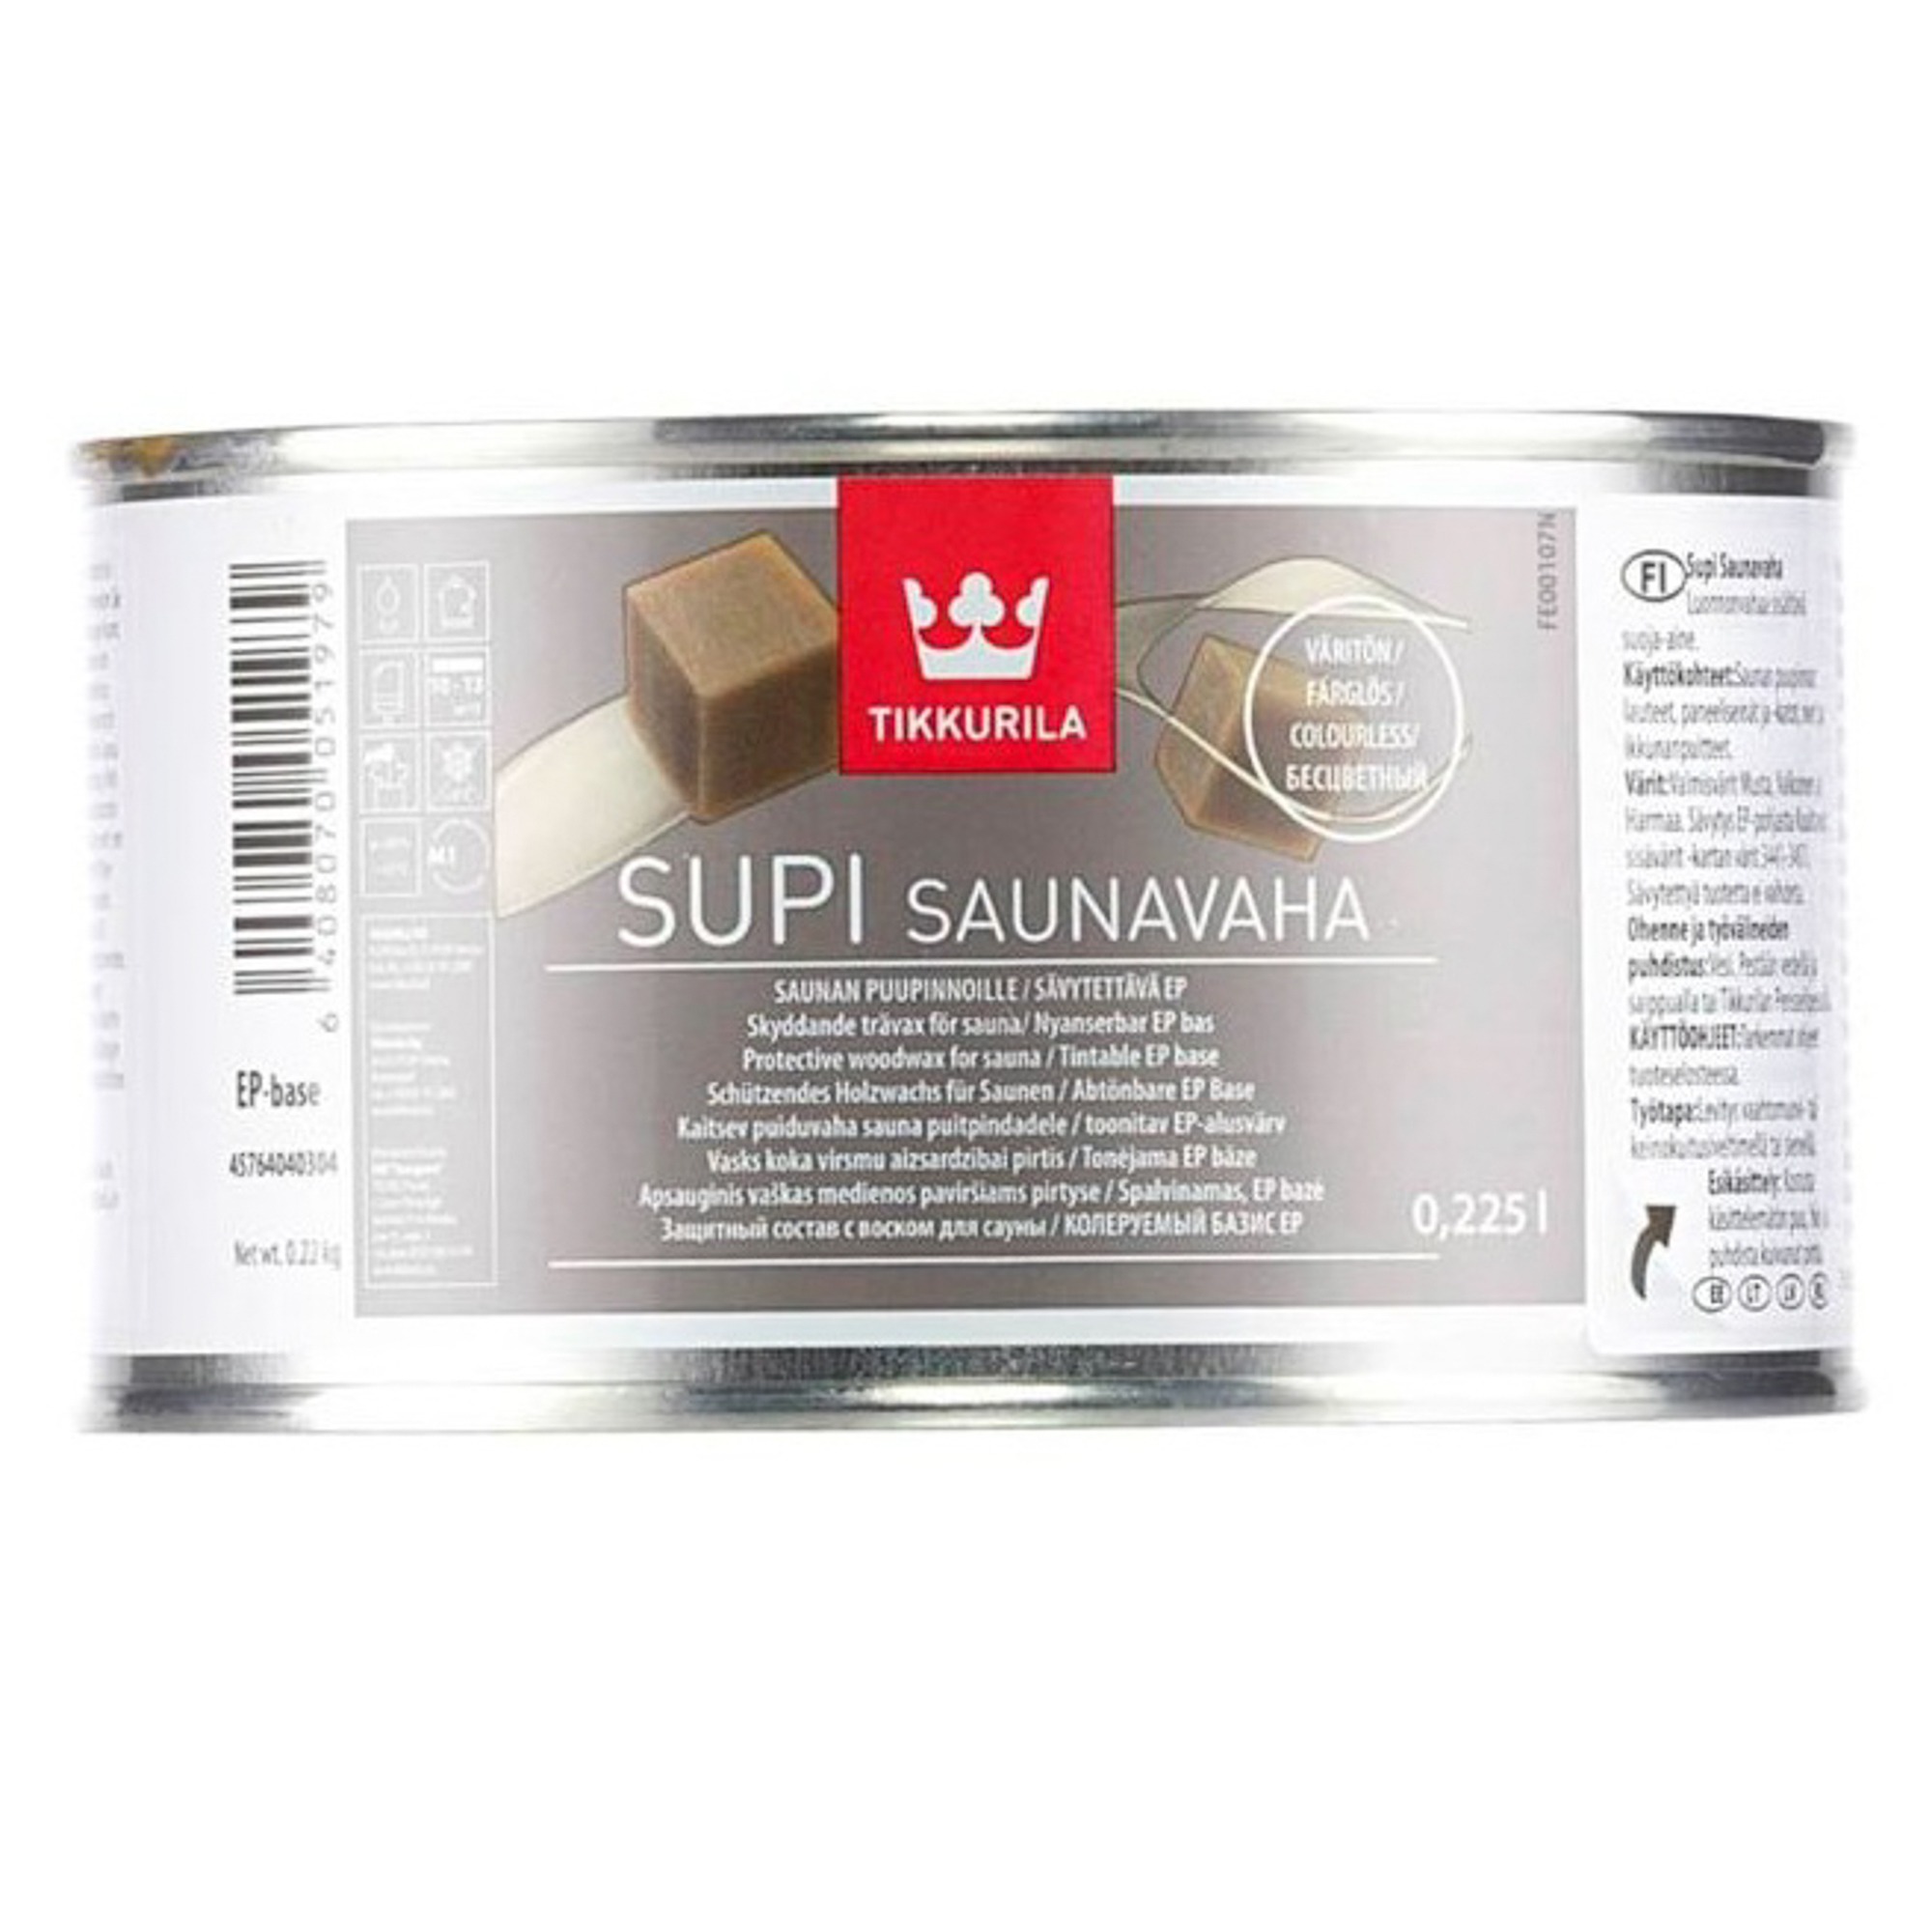 Защитный воск для саун Tikkurila супи саунаваха 0.225 л